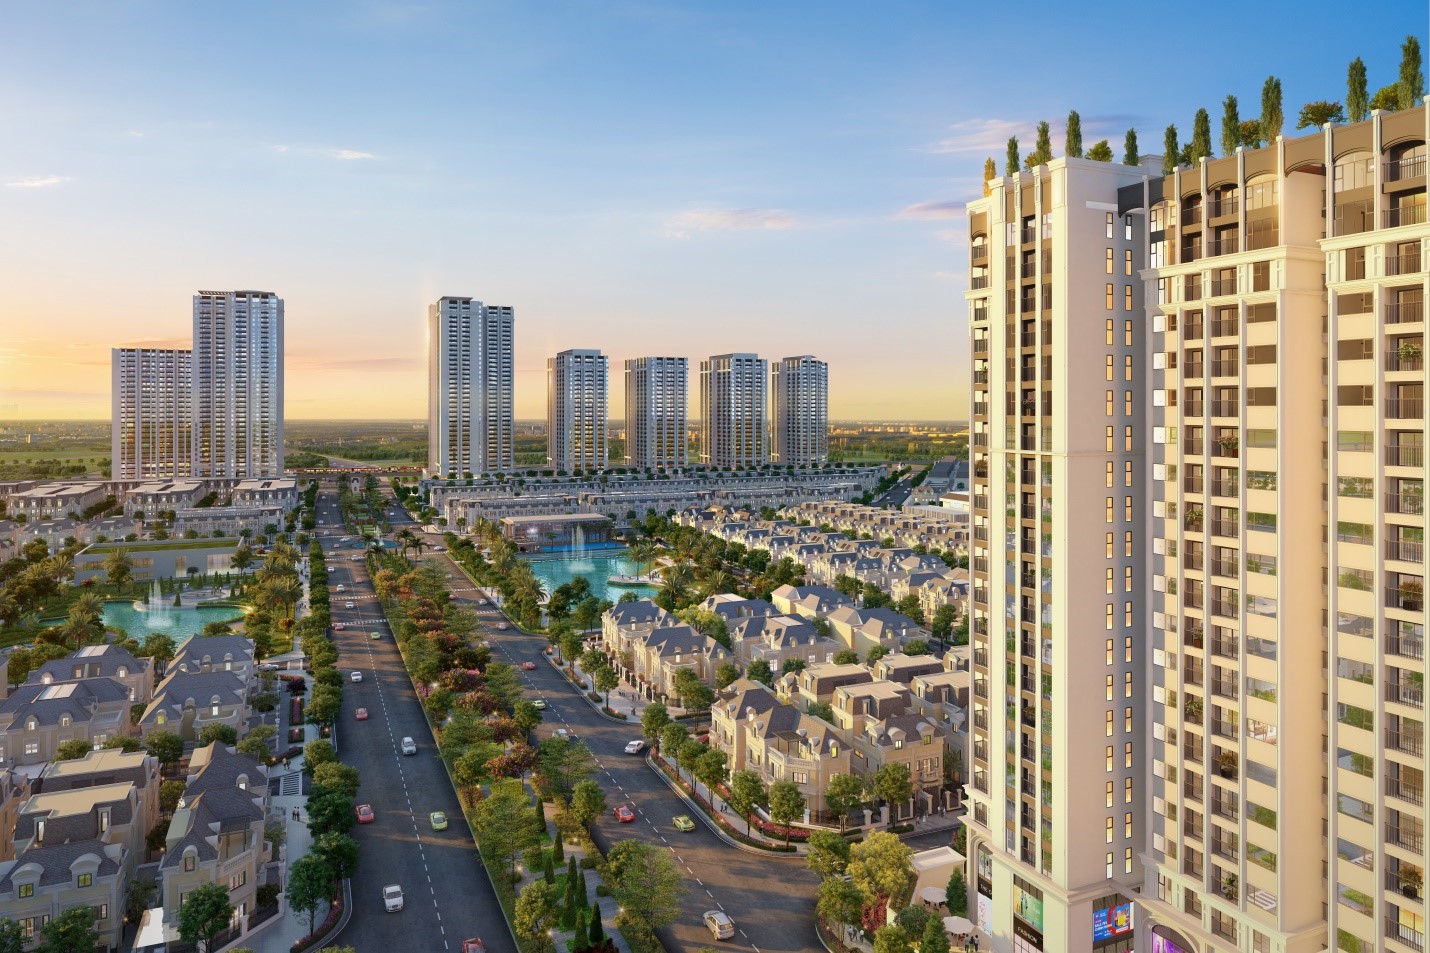 Phía Tây Hà Nội sắp có nguồn cung căn hộ định vị chuẩn sống và nghỉ dưỡng trong khu đô thị trung tâm